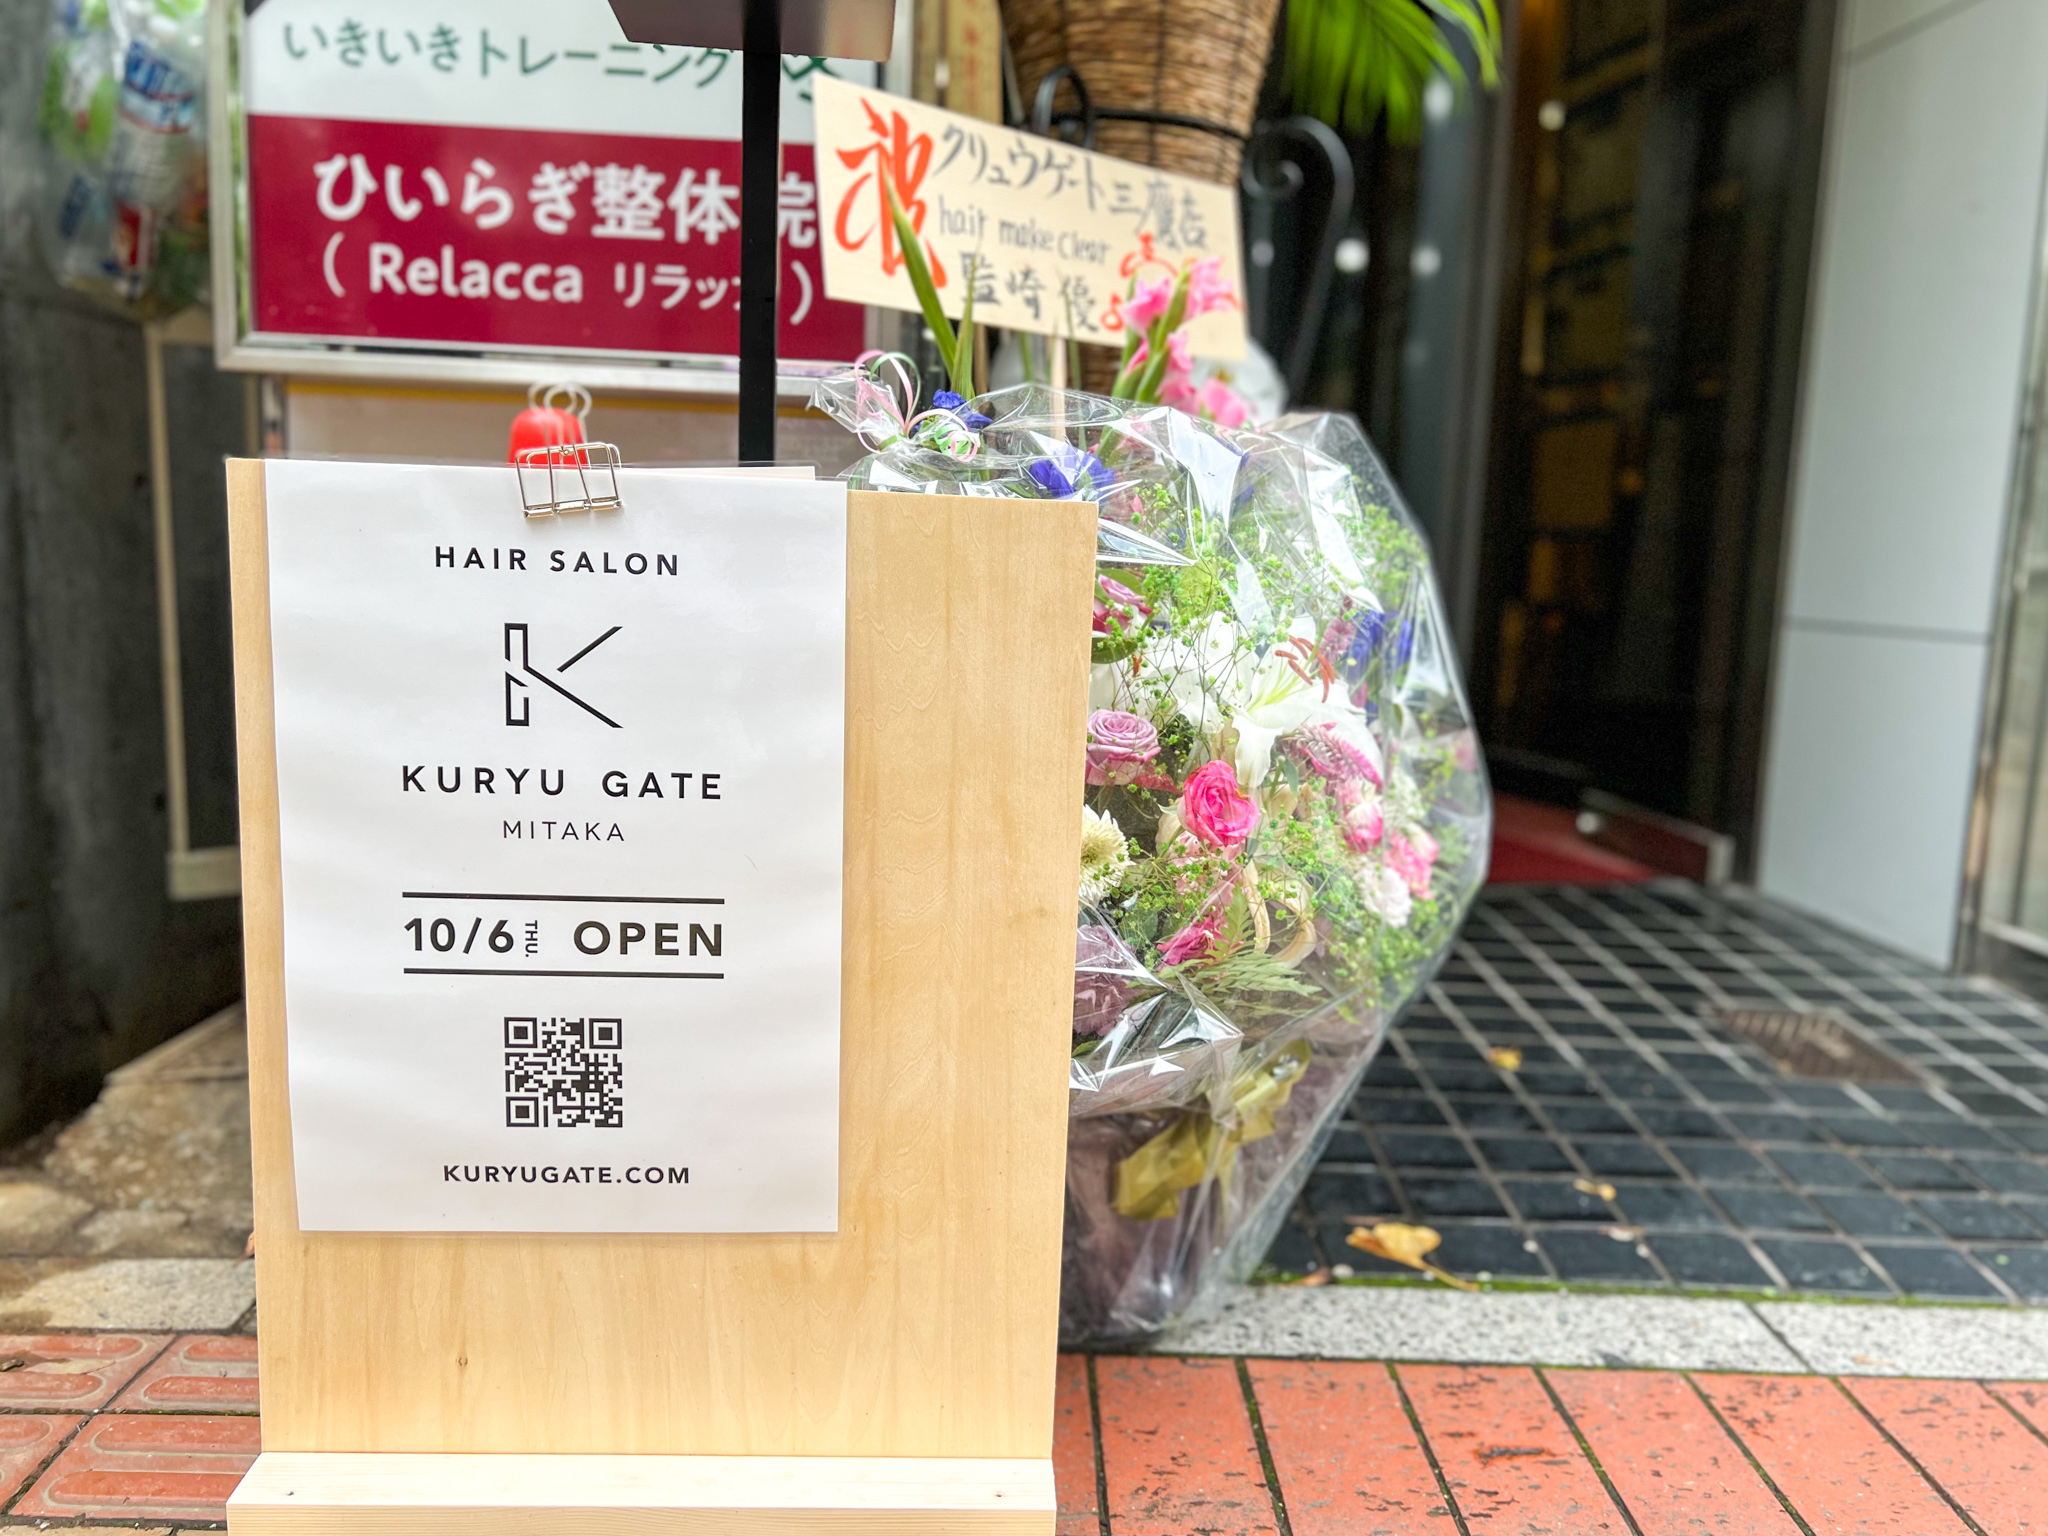 KURYU GATE(クリュウゲート) 三鷹店